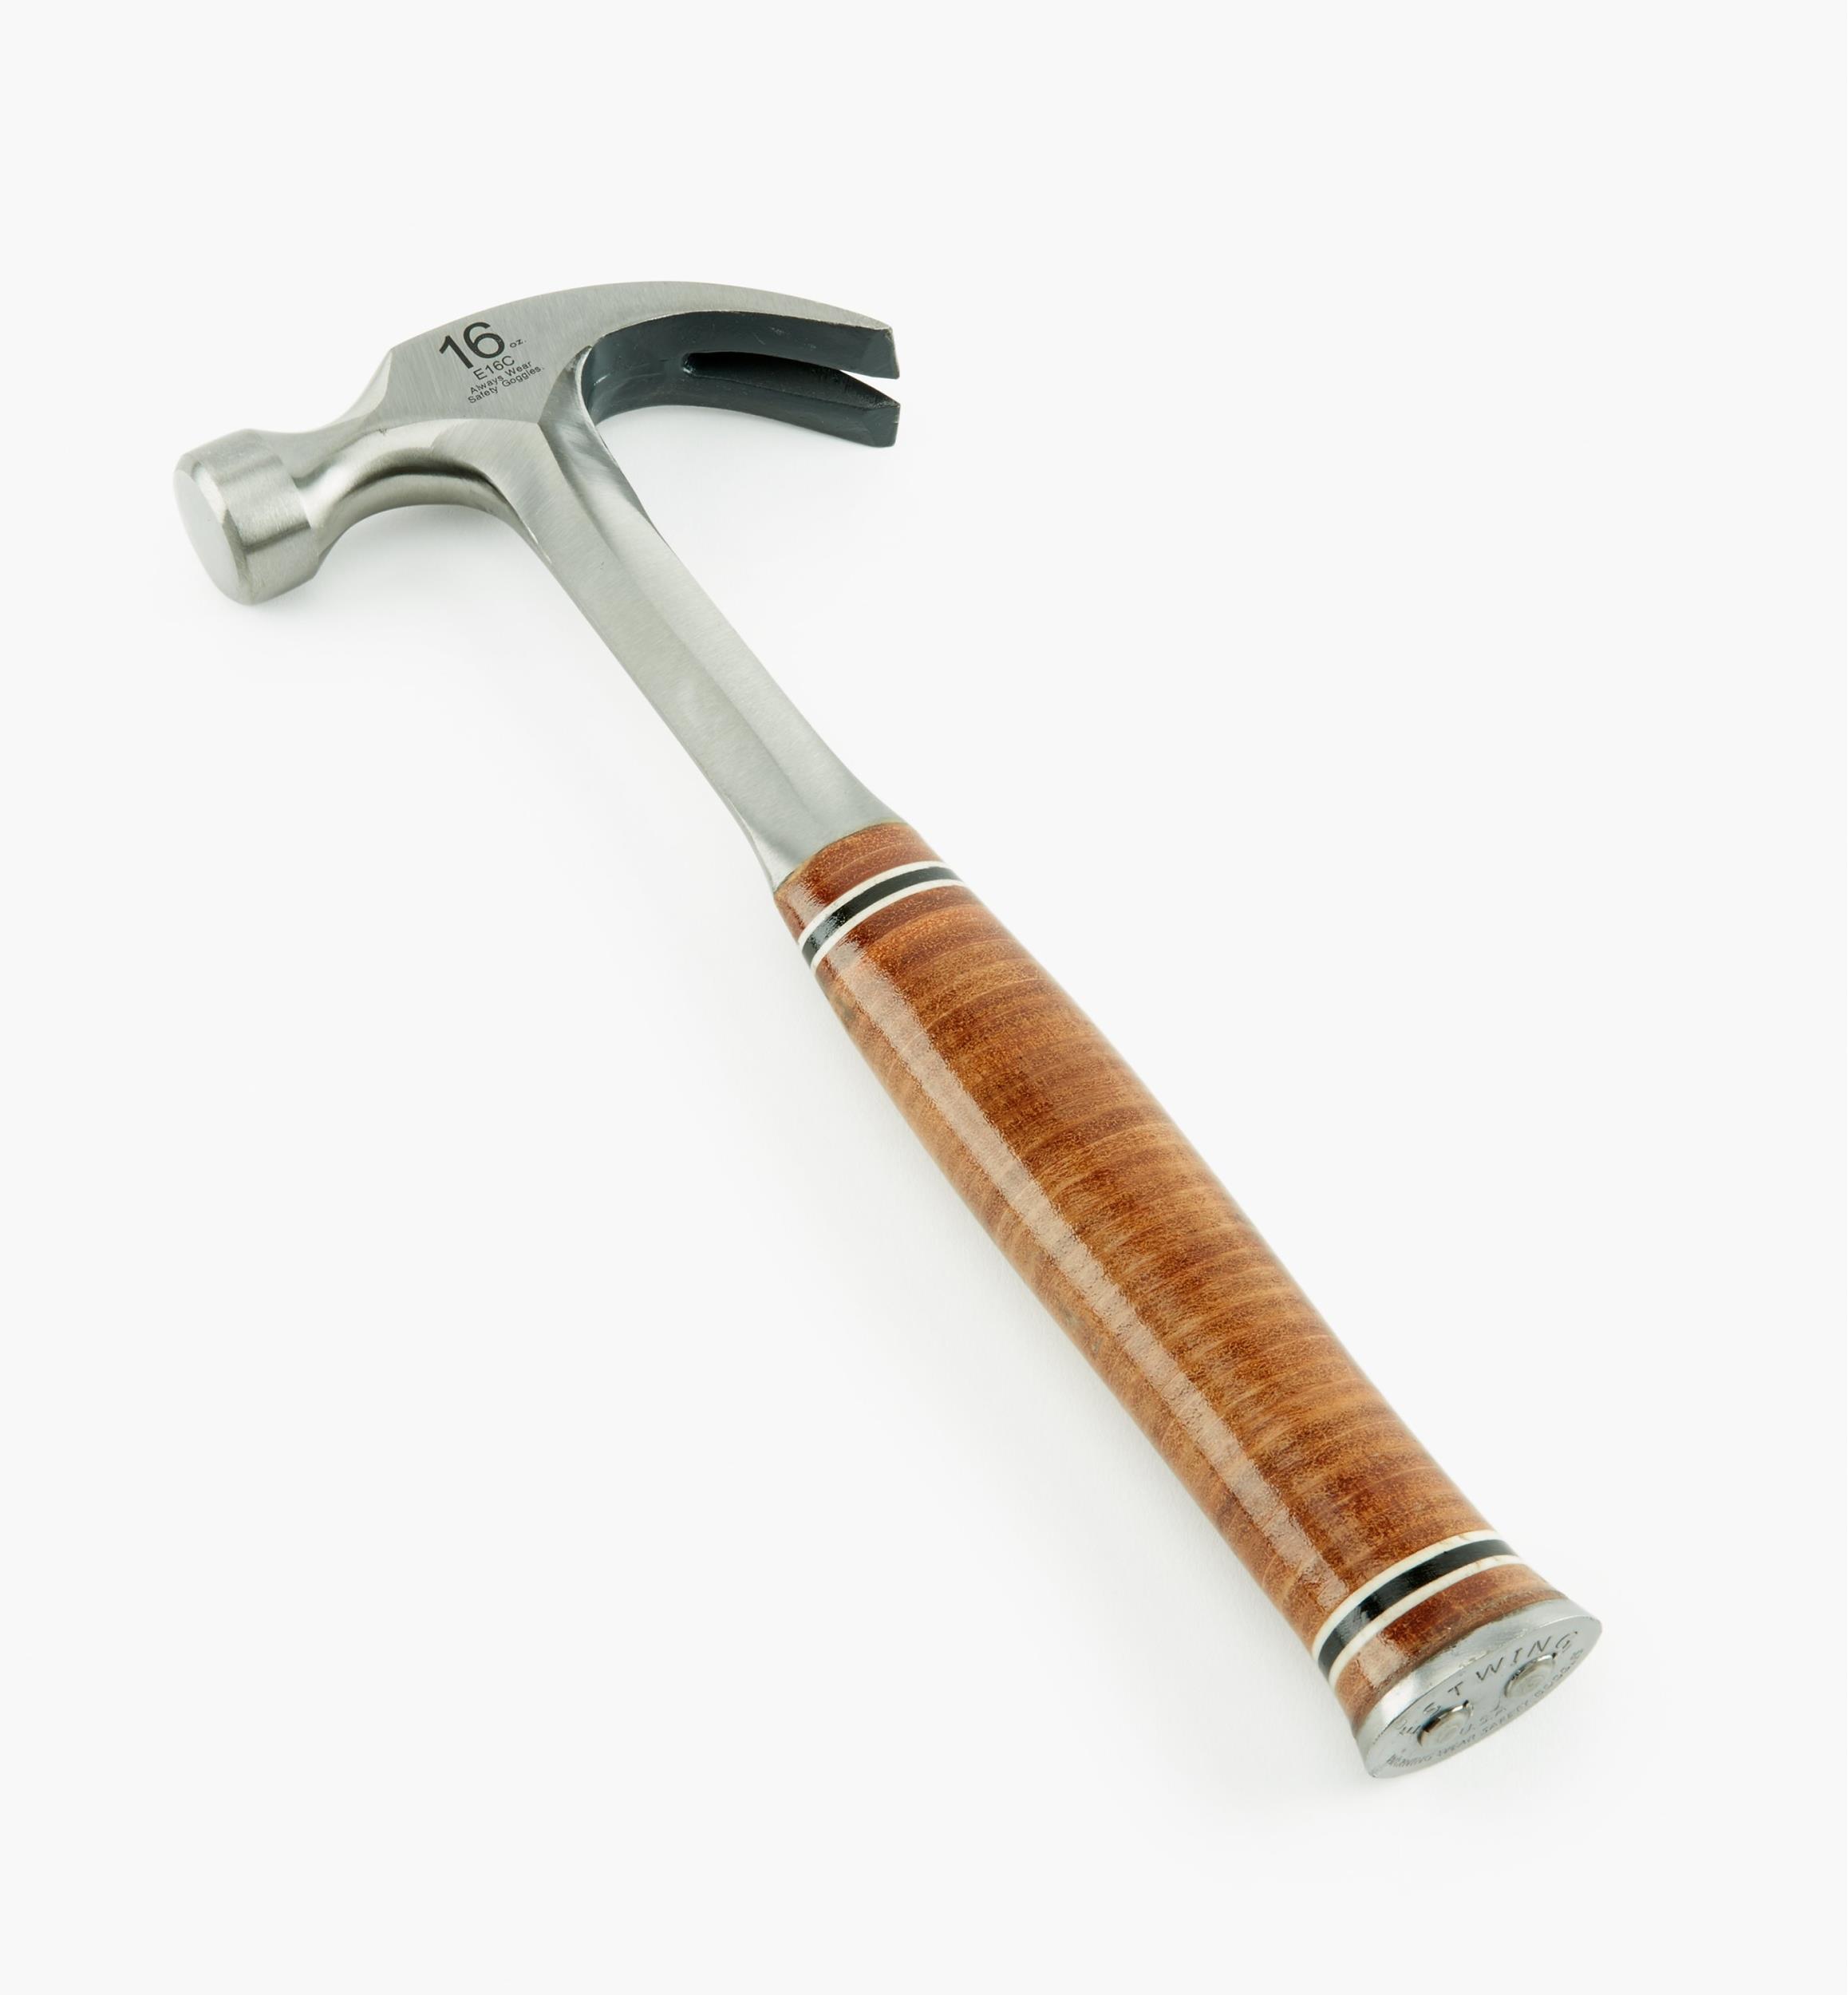 A Claw Hammer Discount, 50% OFF | www.gruposincom.es